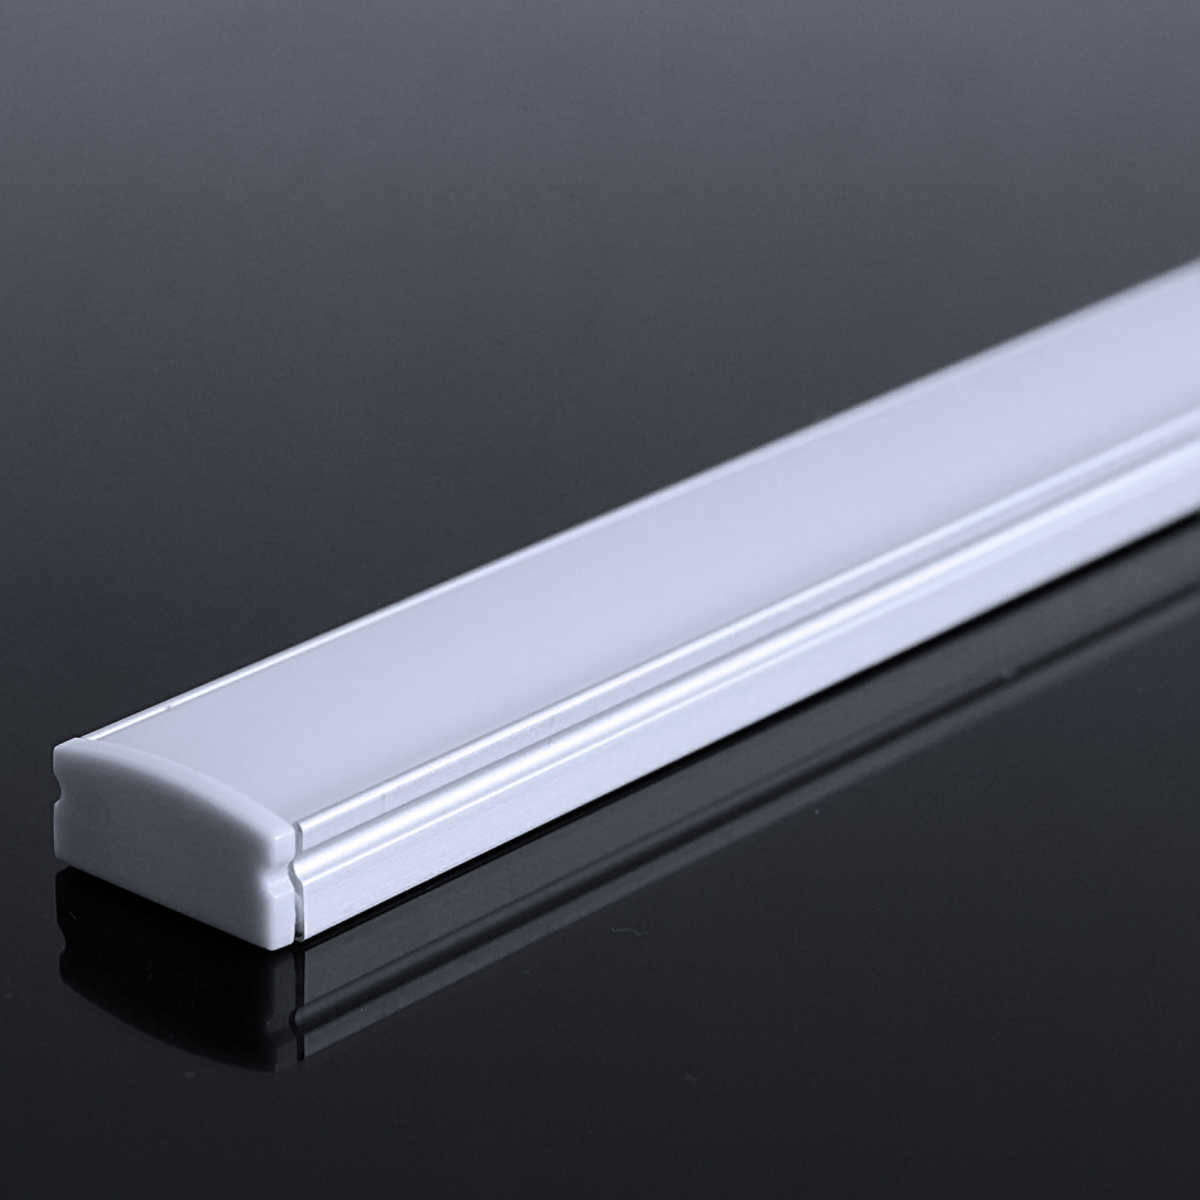 LED Flachprofil "Slim-Line" | Abdeckung diffus | Zuschnitt auf 140cm |